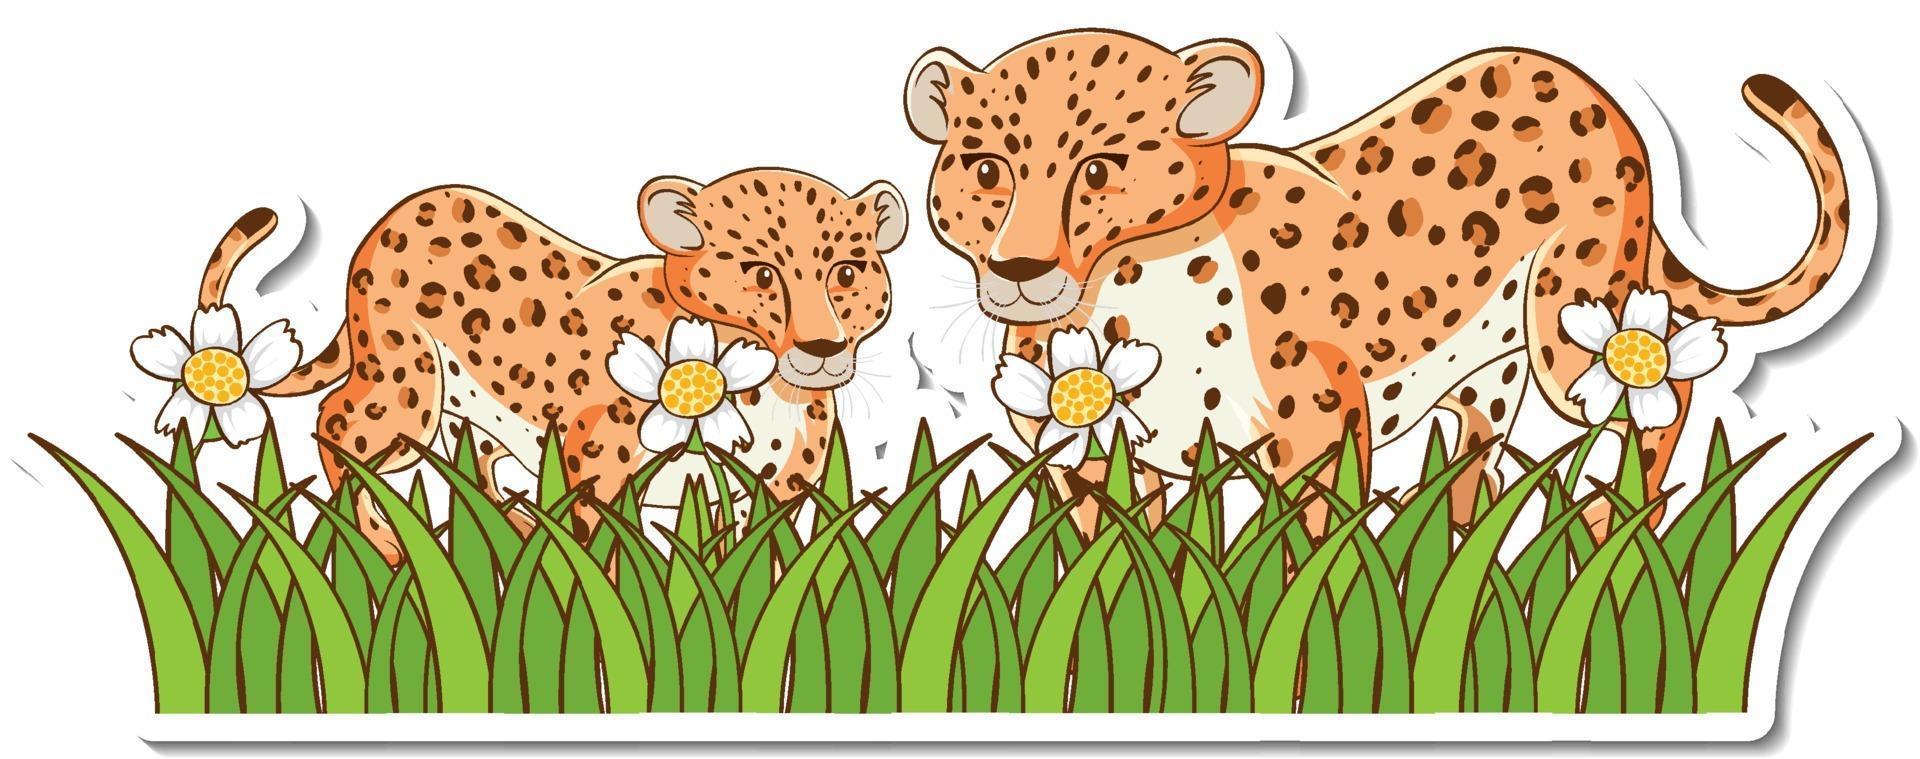 leopardmamma och bebis som står i gräsfältklistermärke vektor